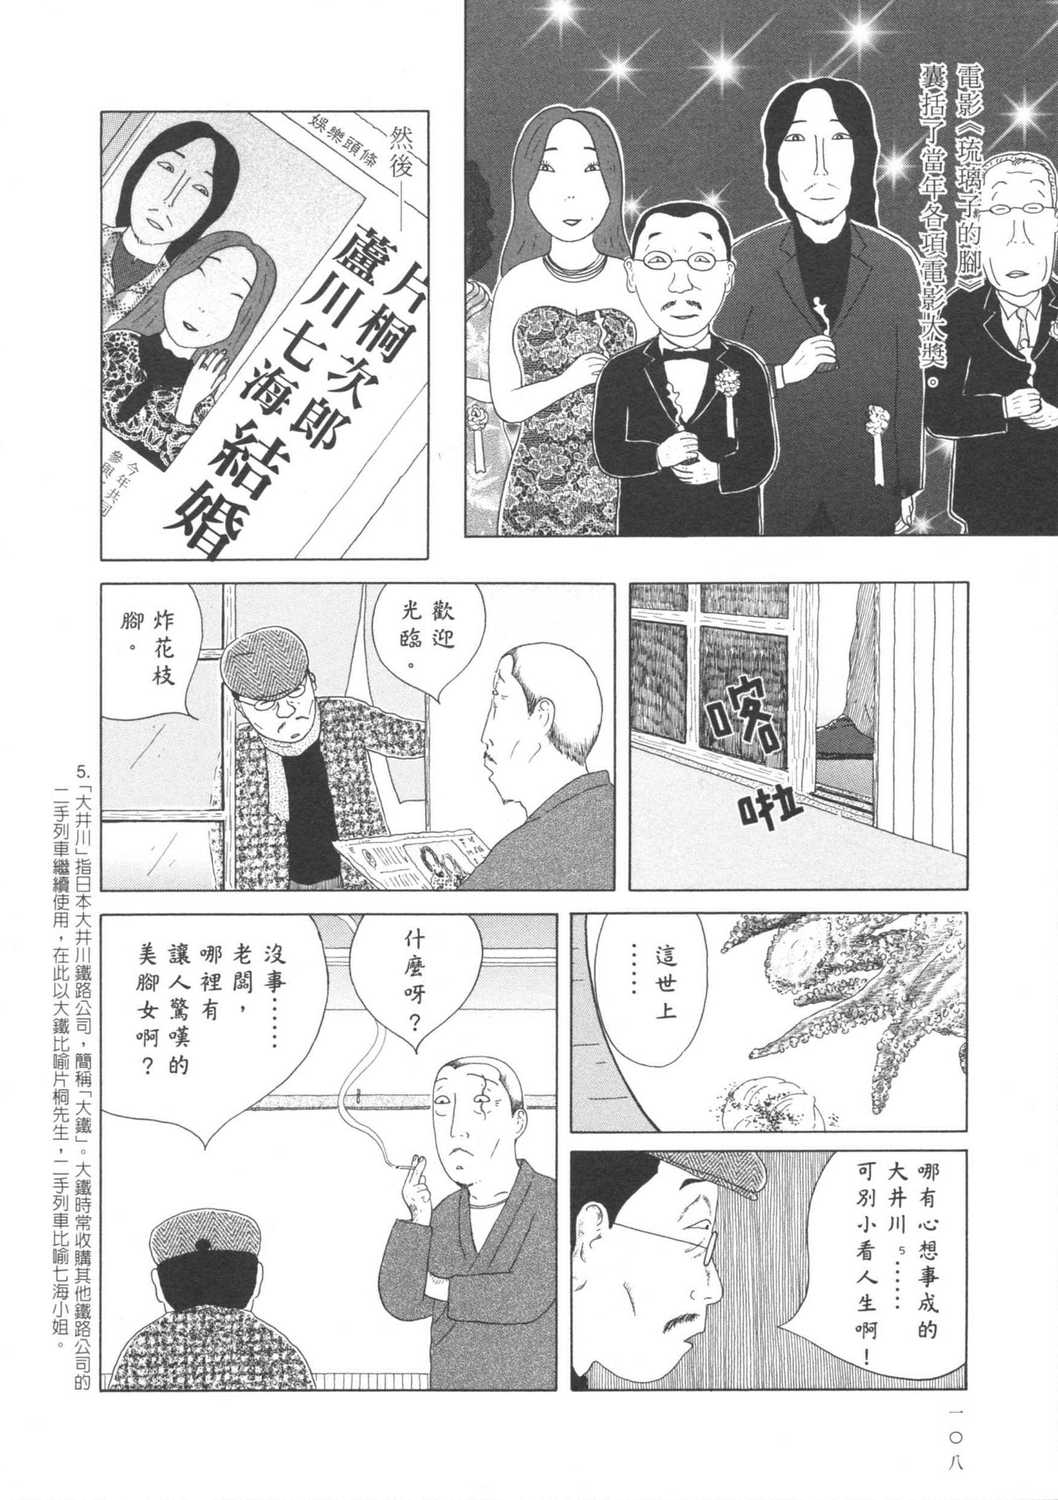 深夜食堂漫画单行本第6集 漫画db